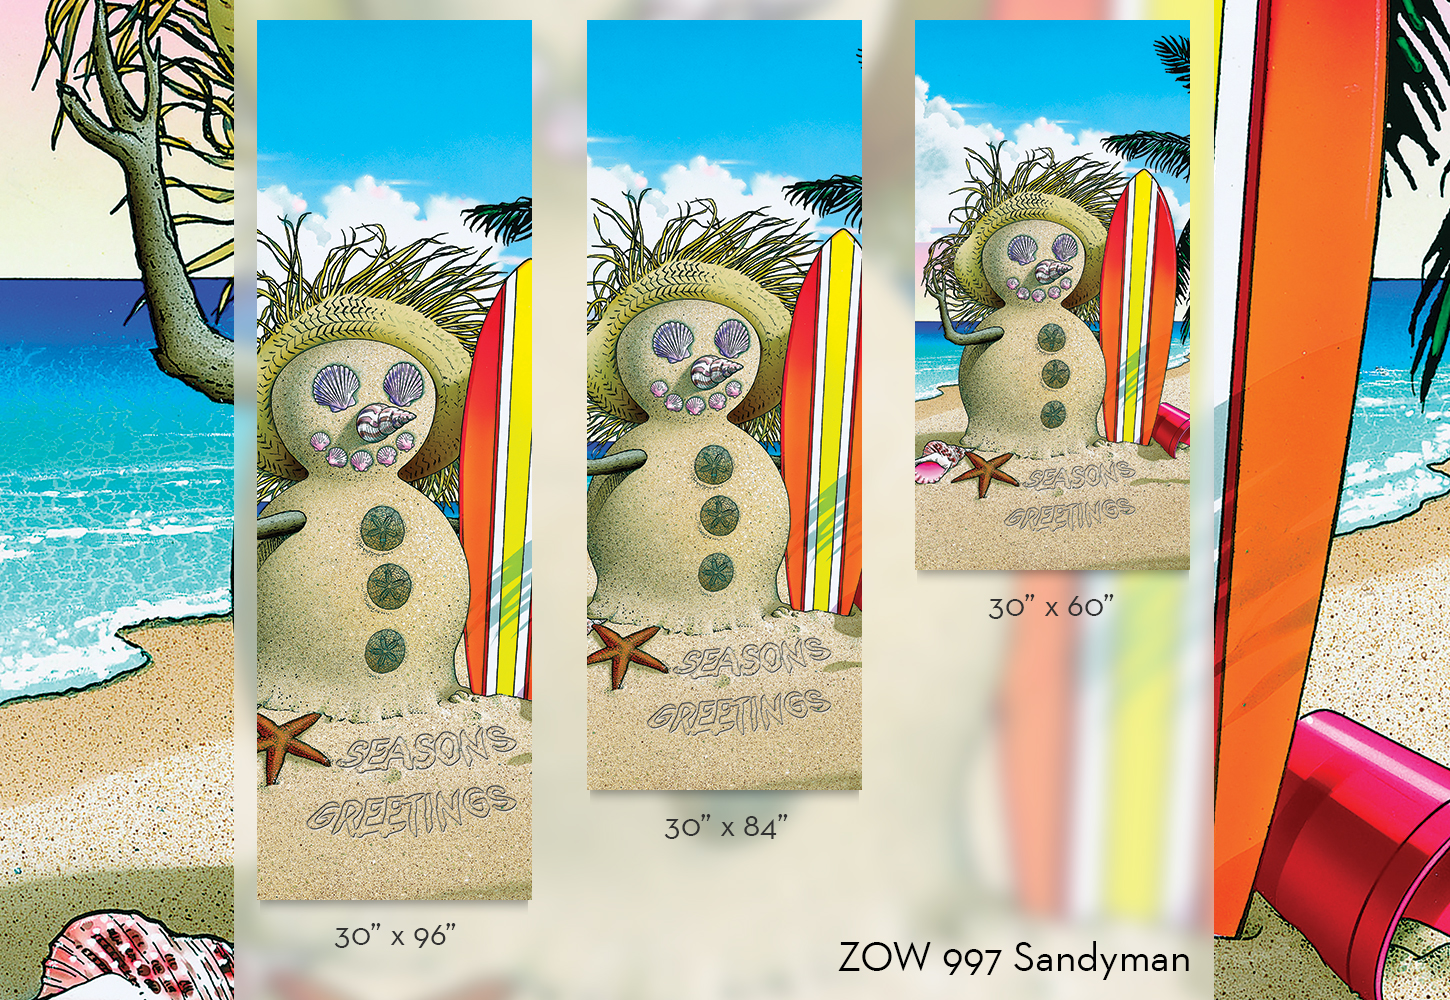 ZOW 997 Sandyman